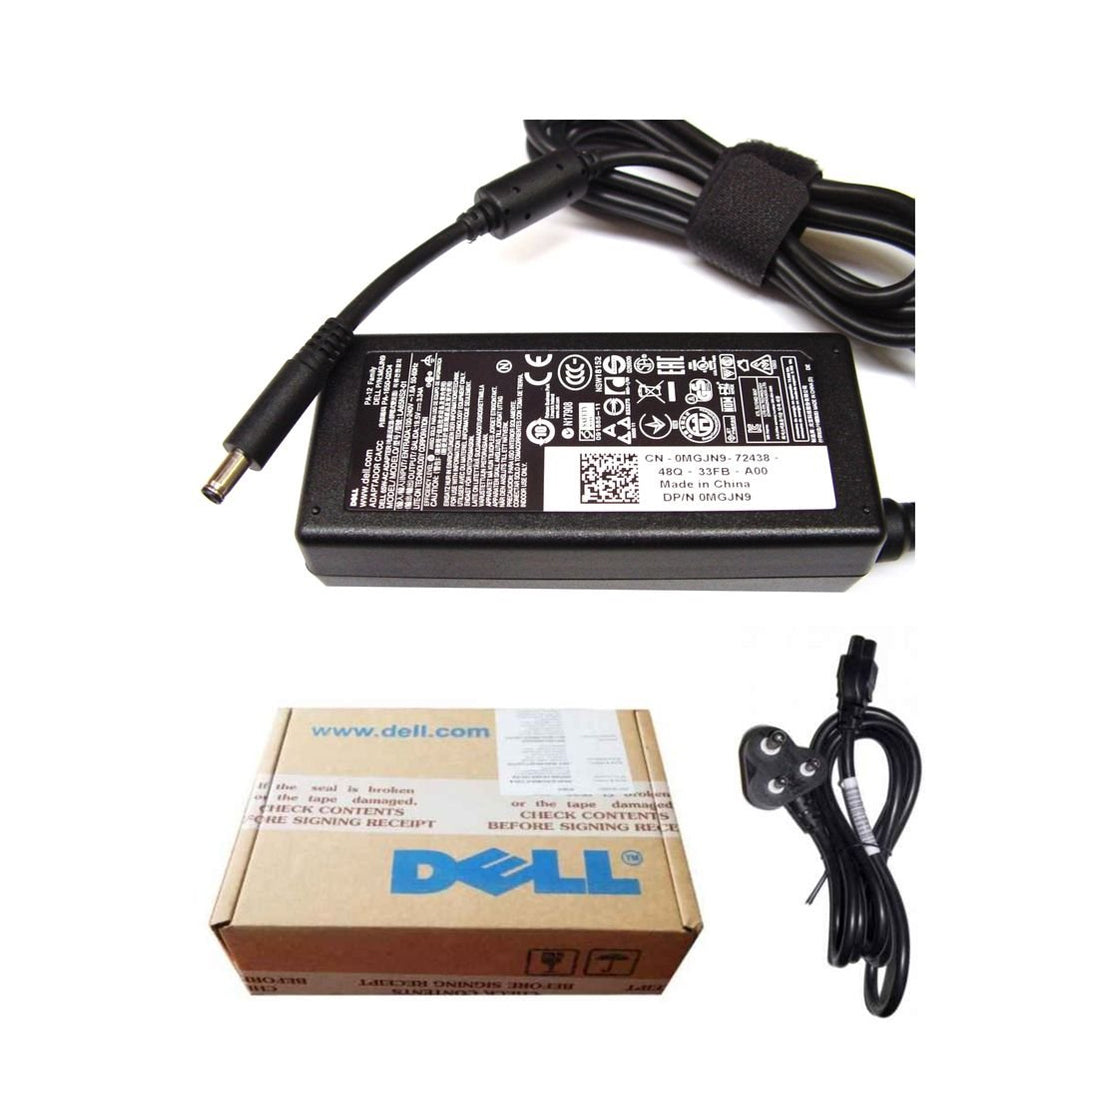 Dell ओरिजिनल 65W 19.5V 4.5mm पिन लैपटॉप चार्जर अडैप्टर XPS 12 9Q33 के लिए पावर कॉर्ड के साथ